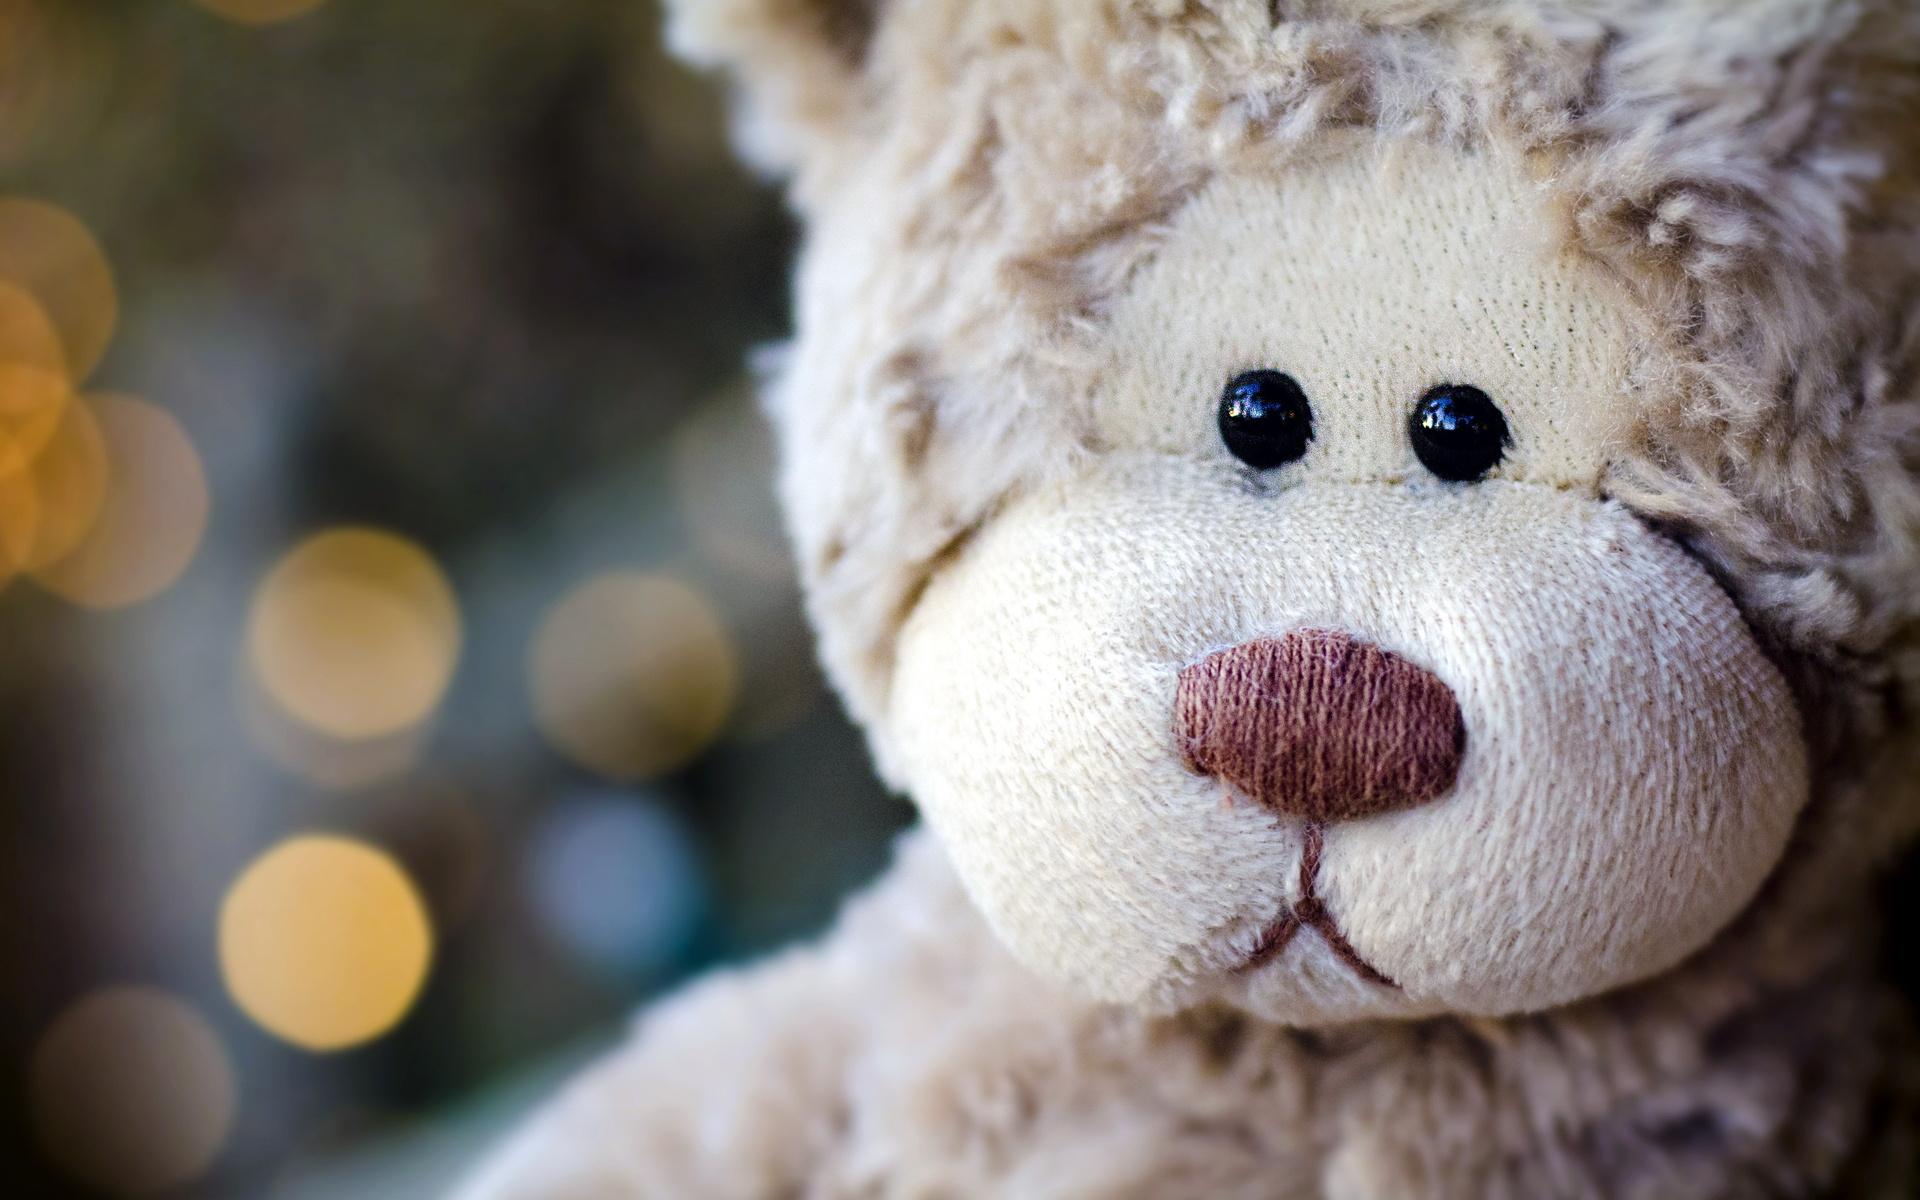 Animals bears teddy toys mood photography faces cute